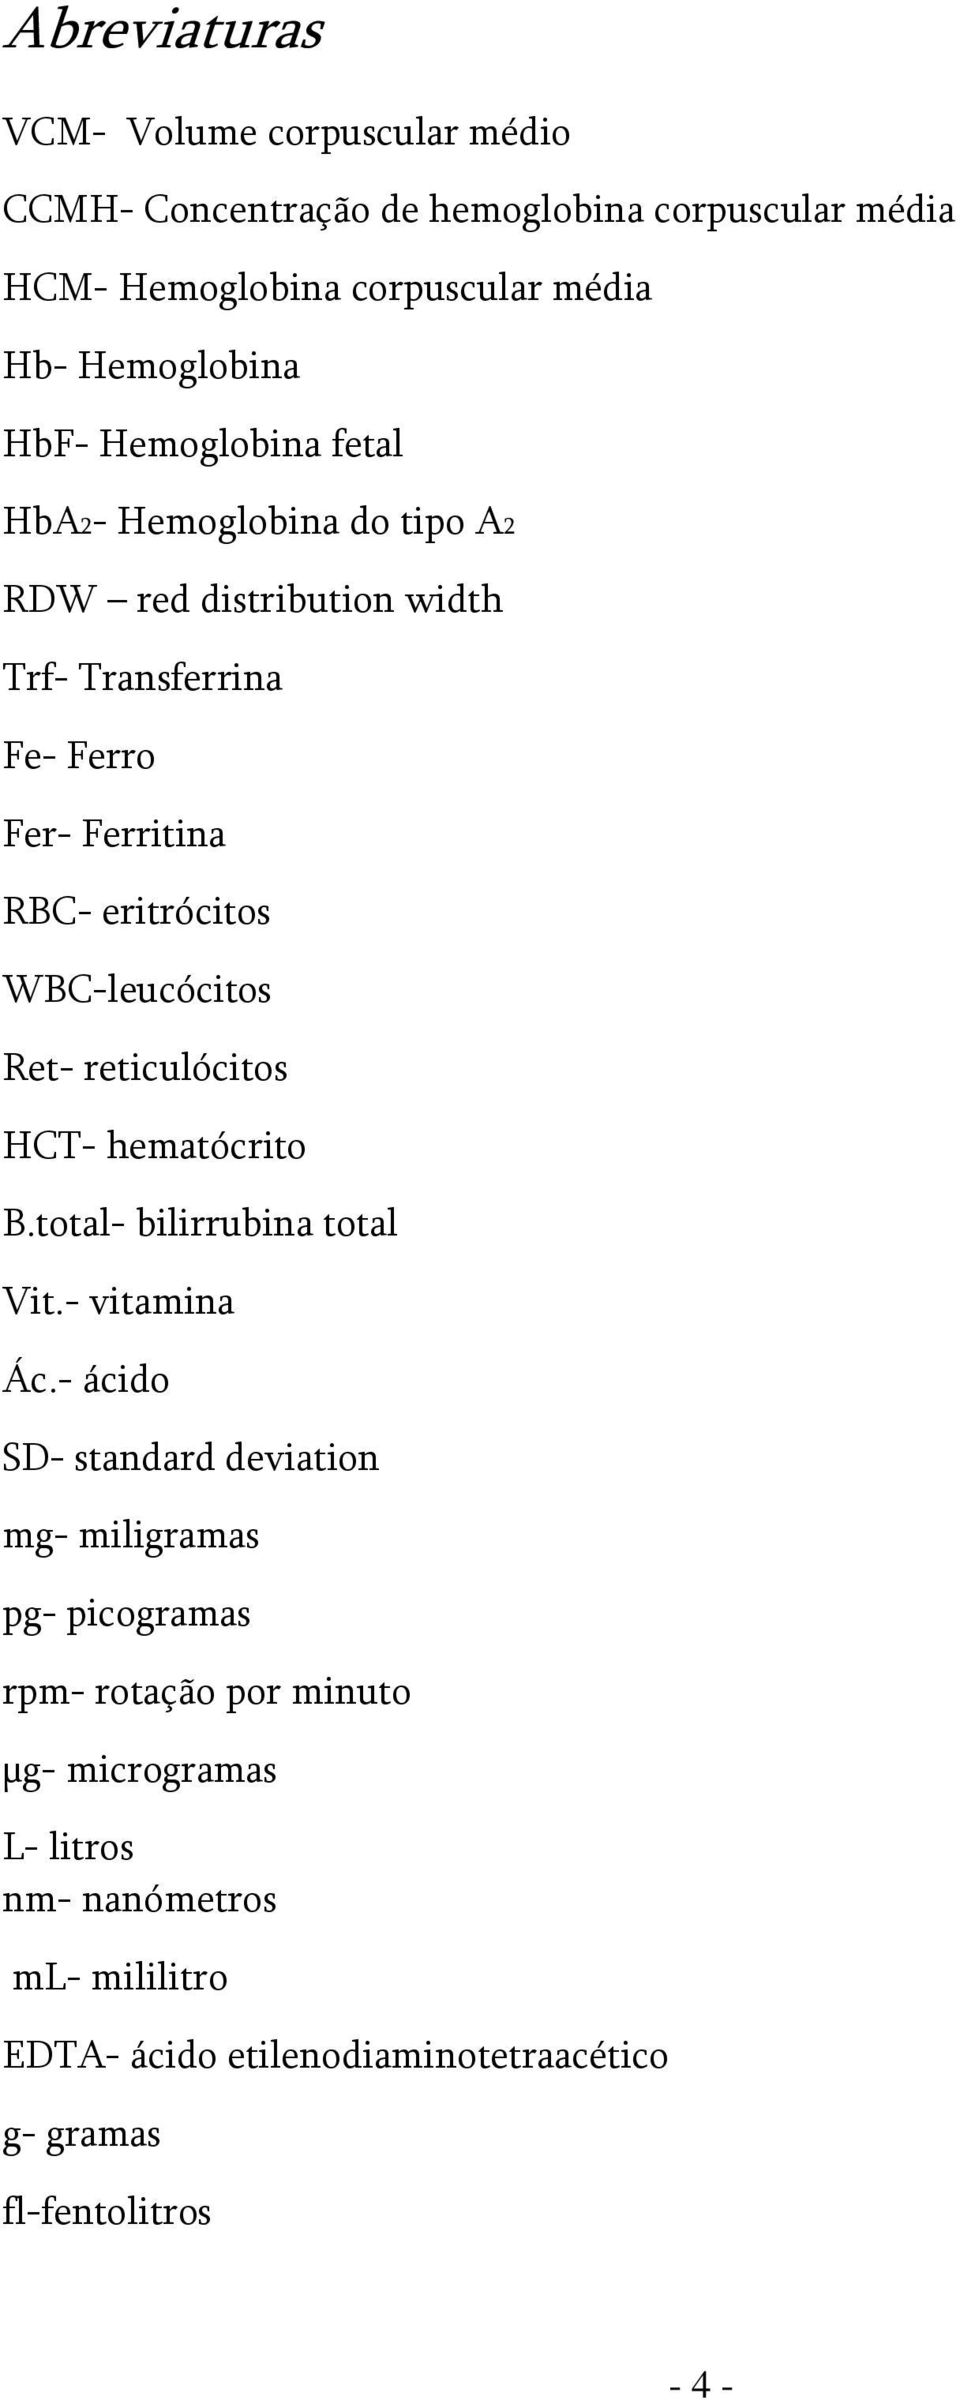 WBC-leucócitos Ret- reticulócitos HCT- hematócrito B.total- bilirrubina total Vit.- vitamina Ác.